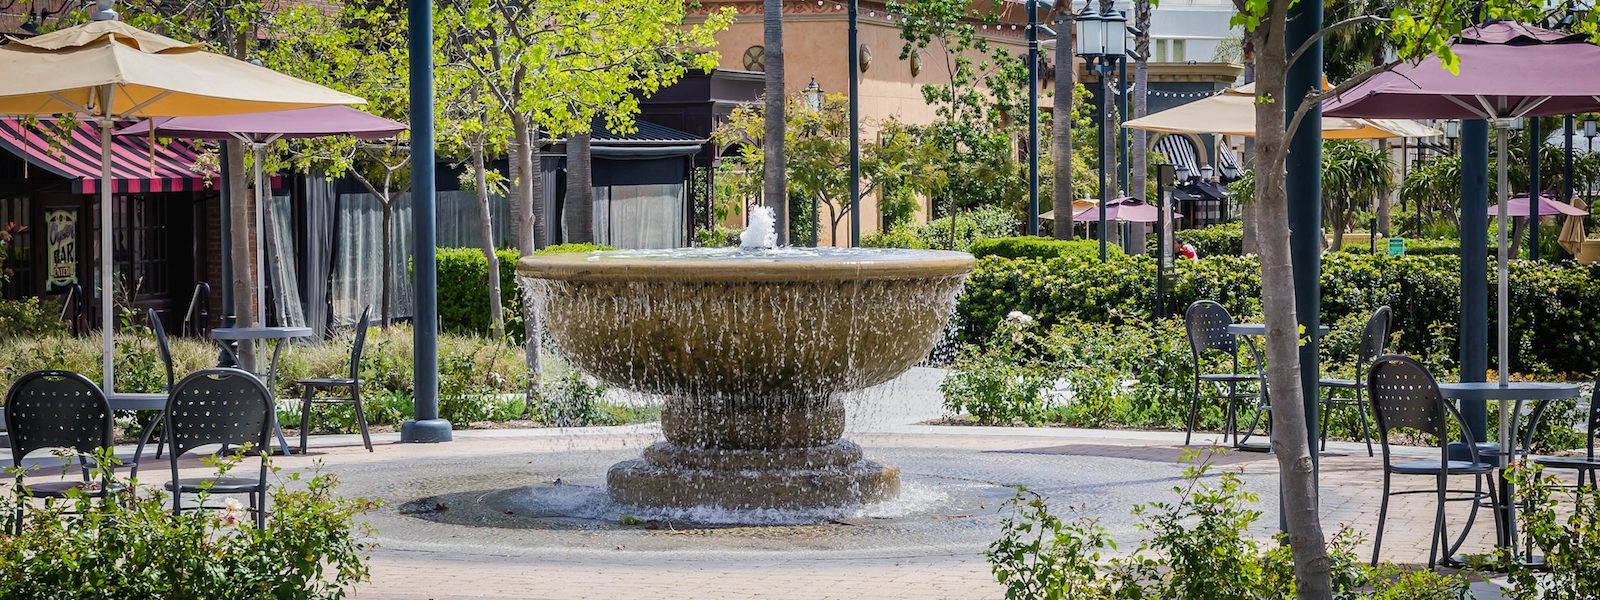 A water fountain in a Pasadena shopping center